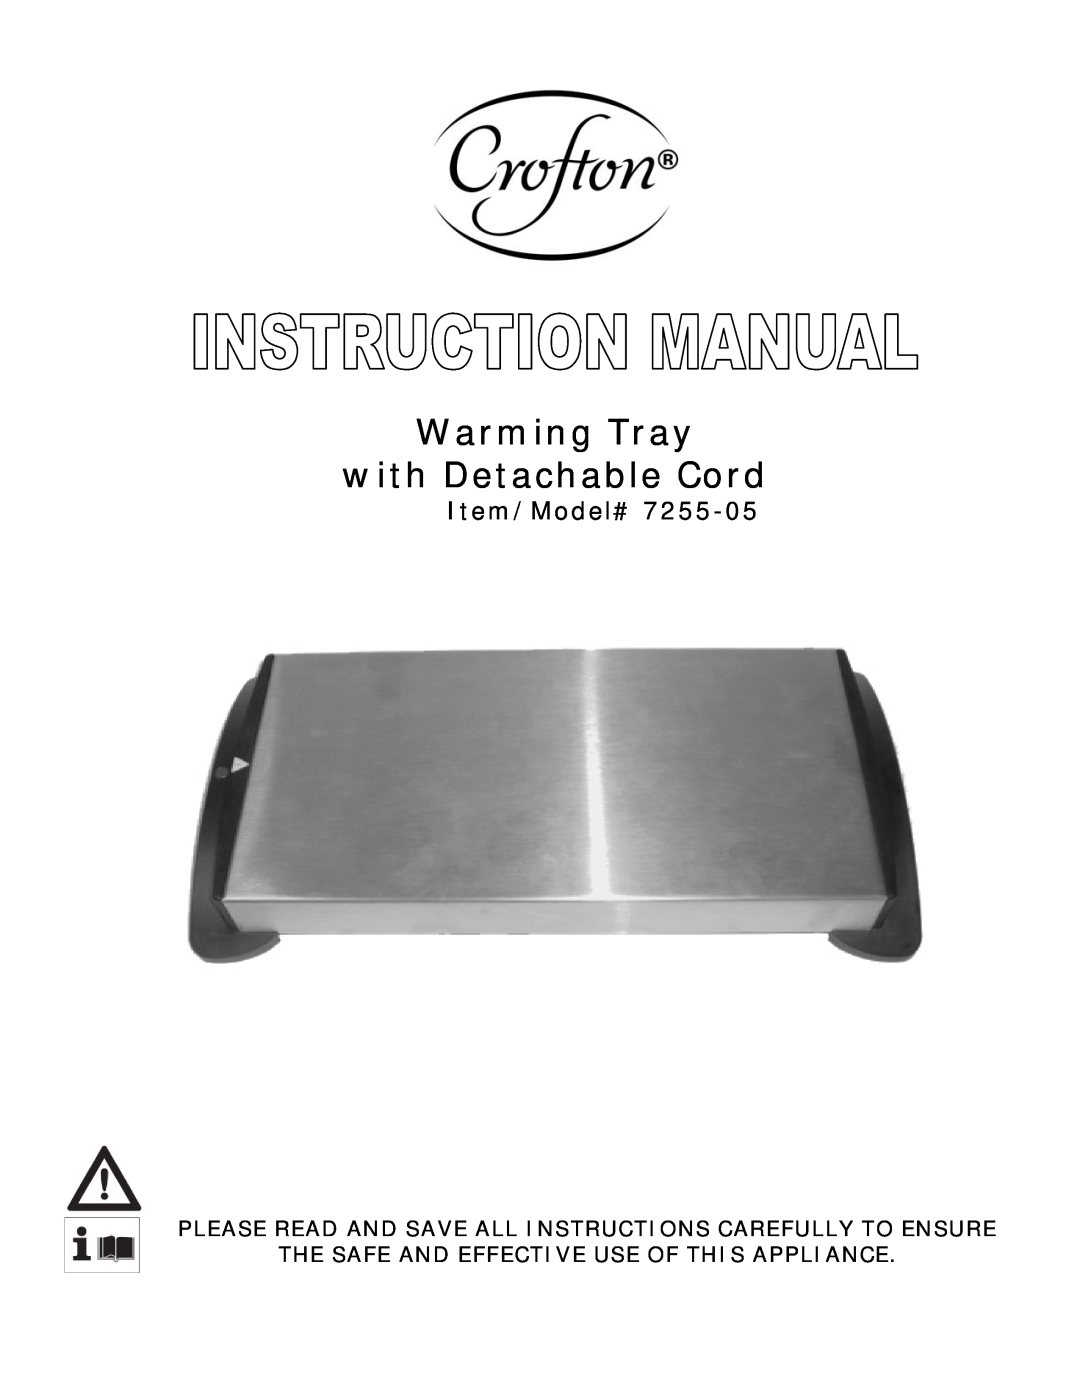 Wachsmuth & Krogmann 7255-05 manual Warming Tray with Detachable Cord, Item/Model# 